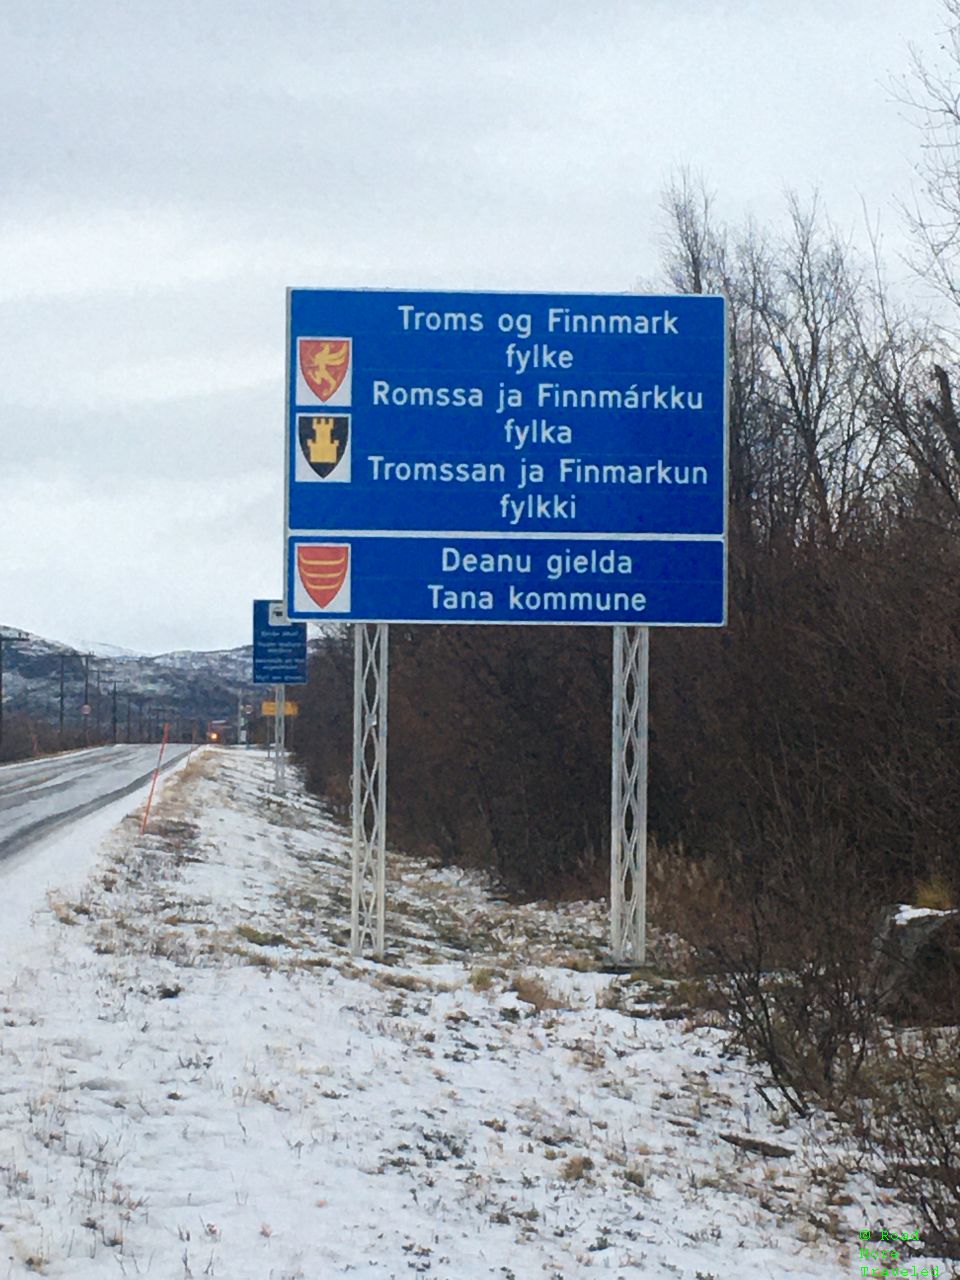 Troms og Finnmark welcome sign